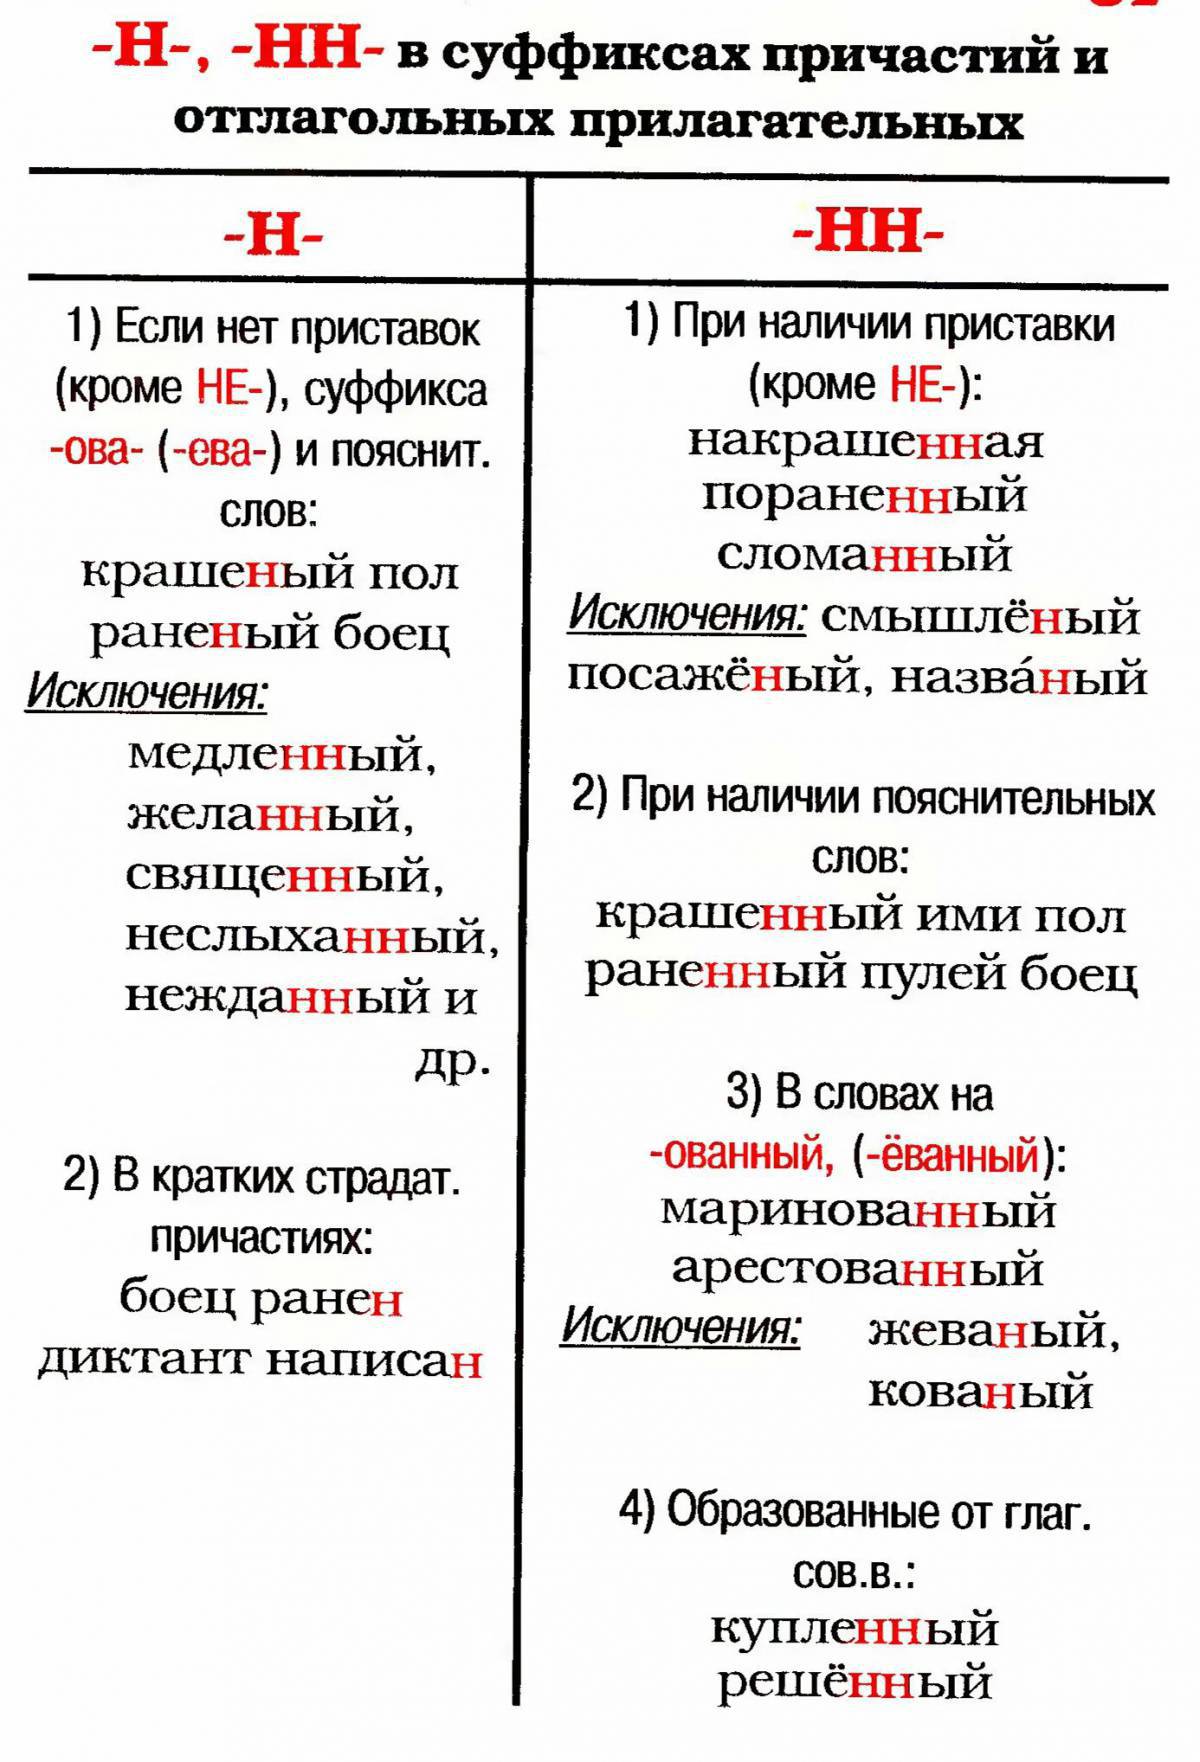 правило написания рост и раст в русском языке фото 106